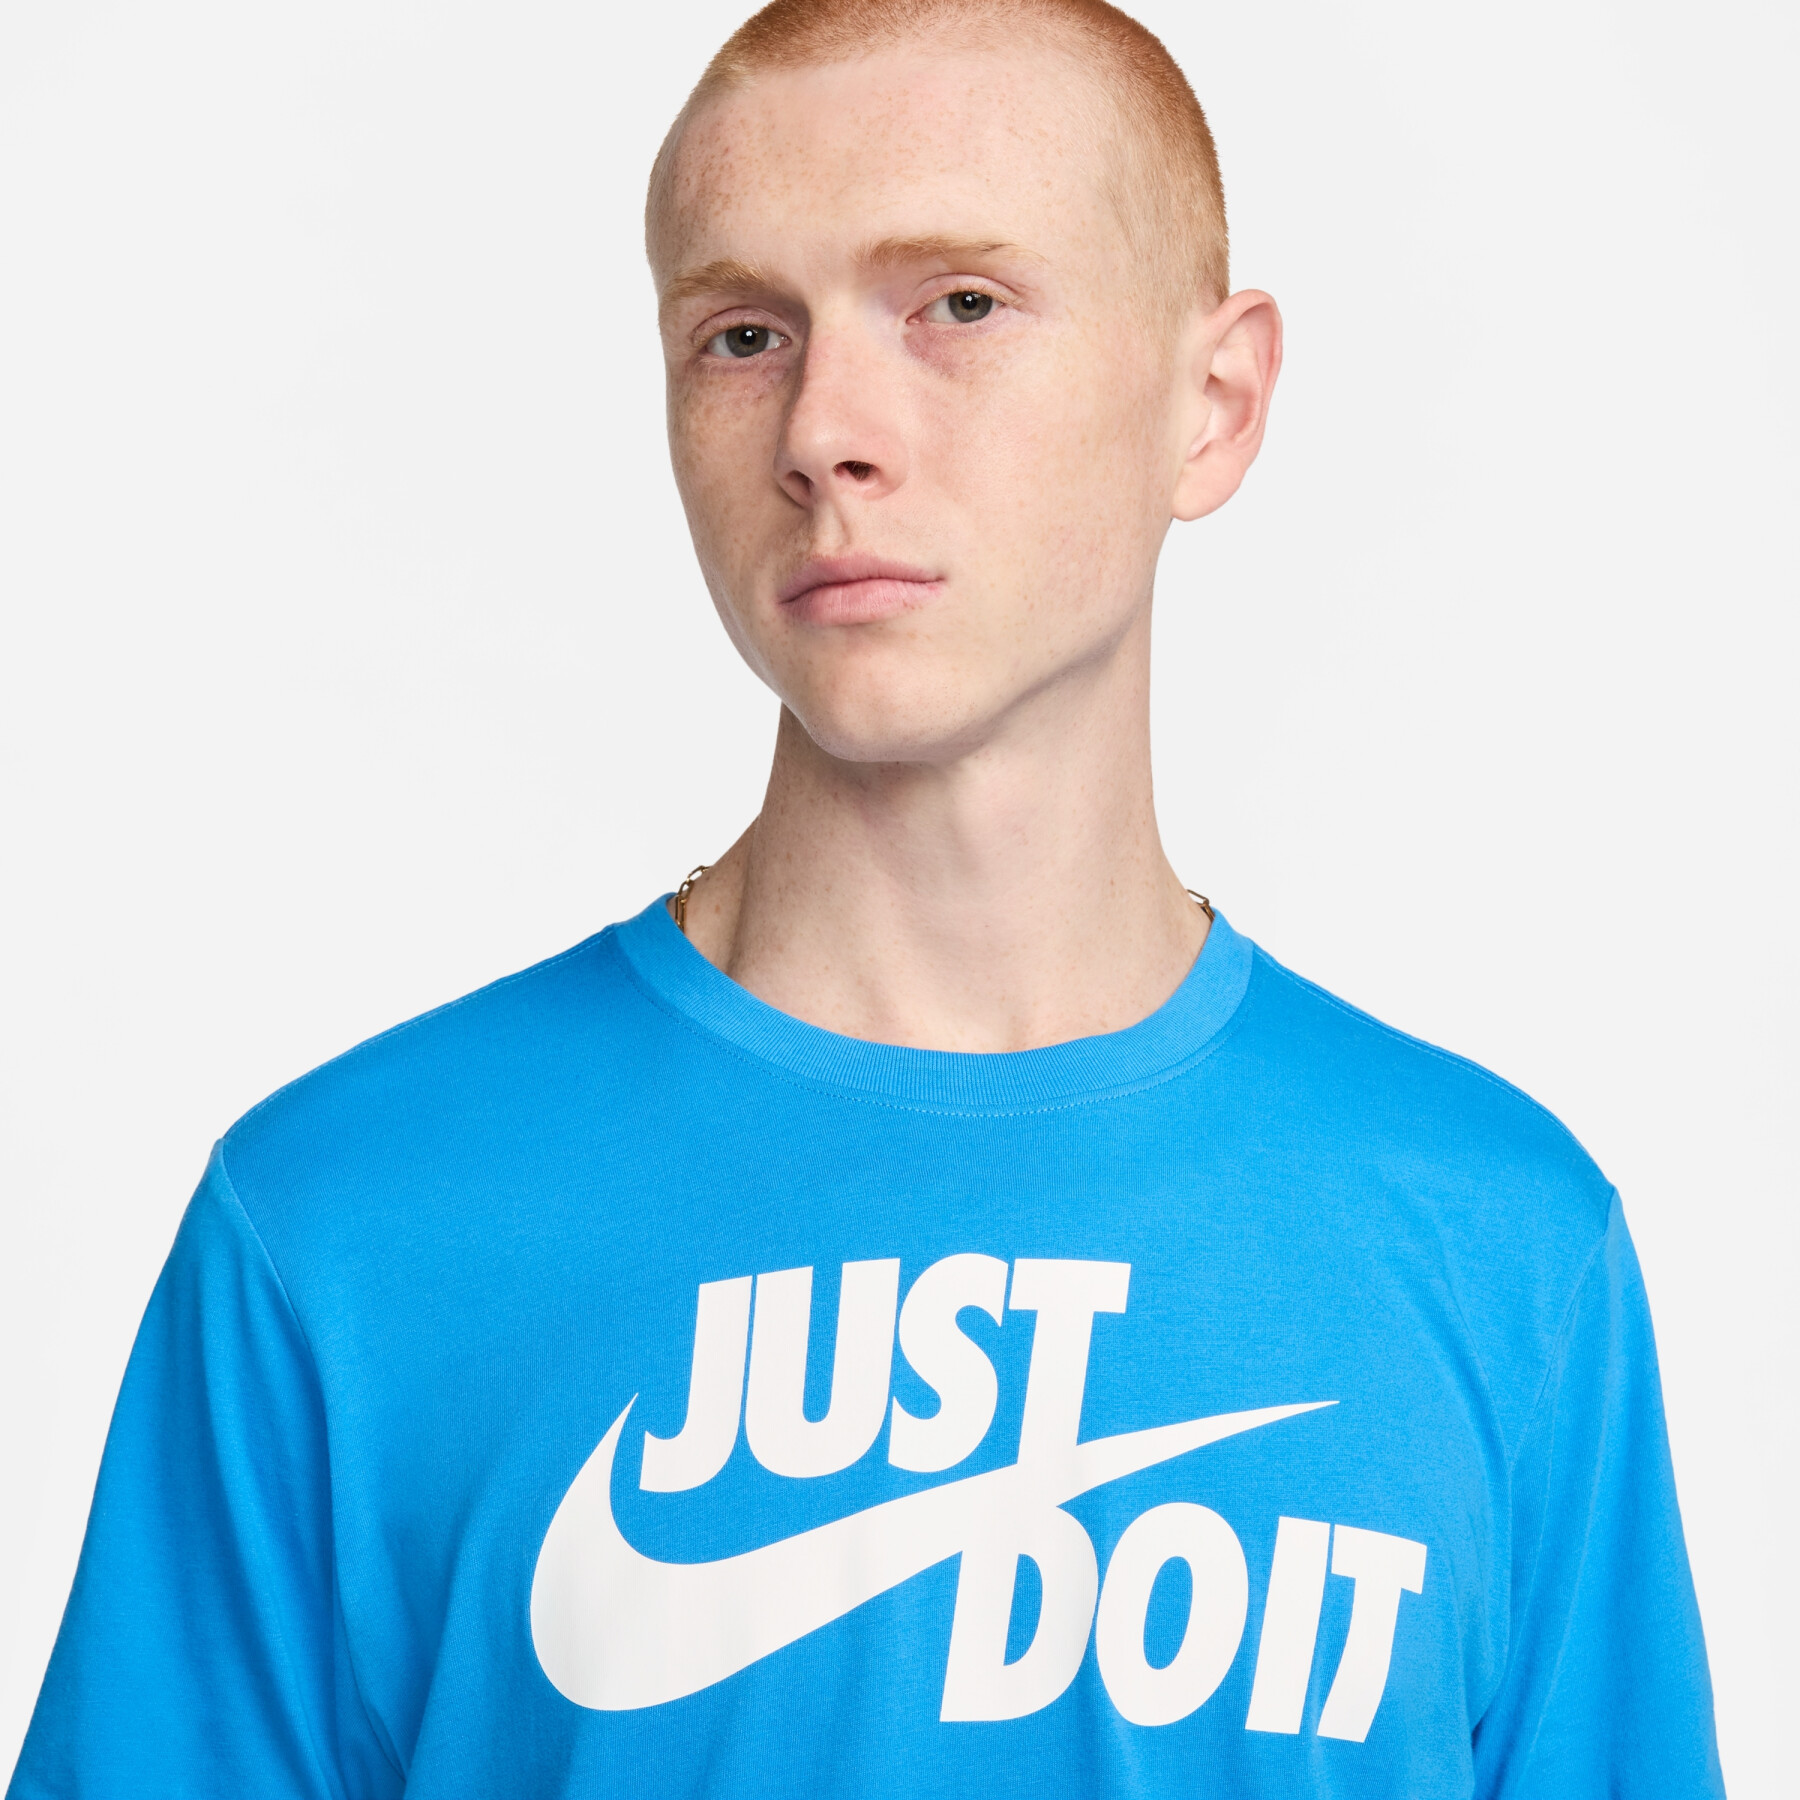 Camiseta Nike JDI